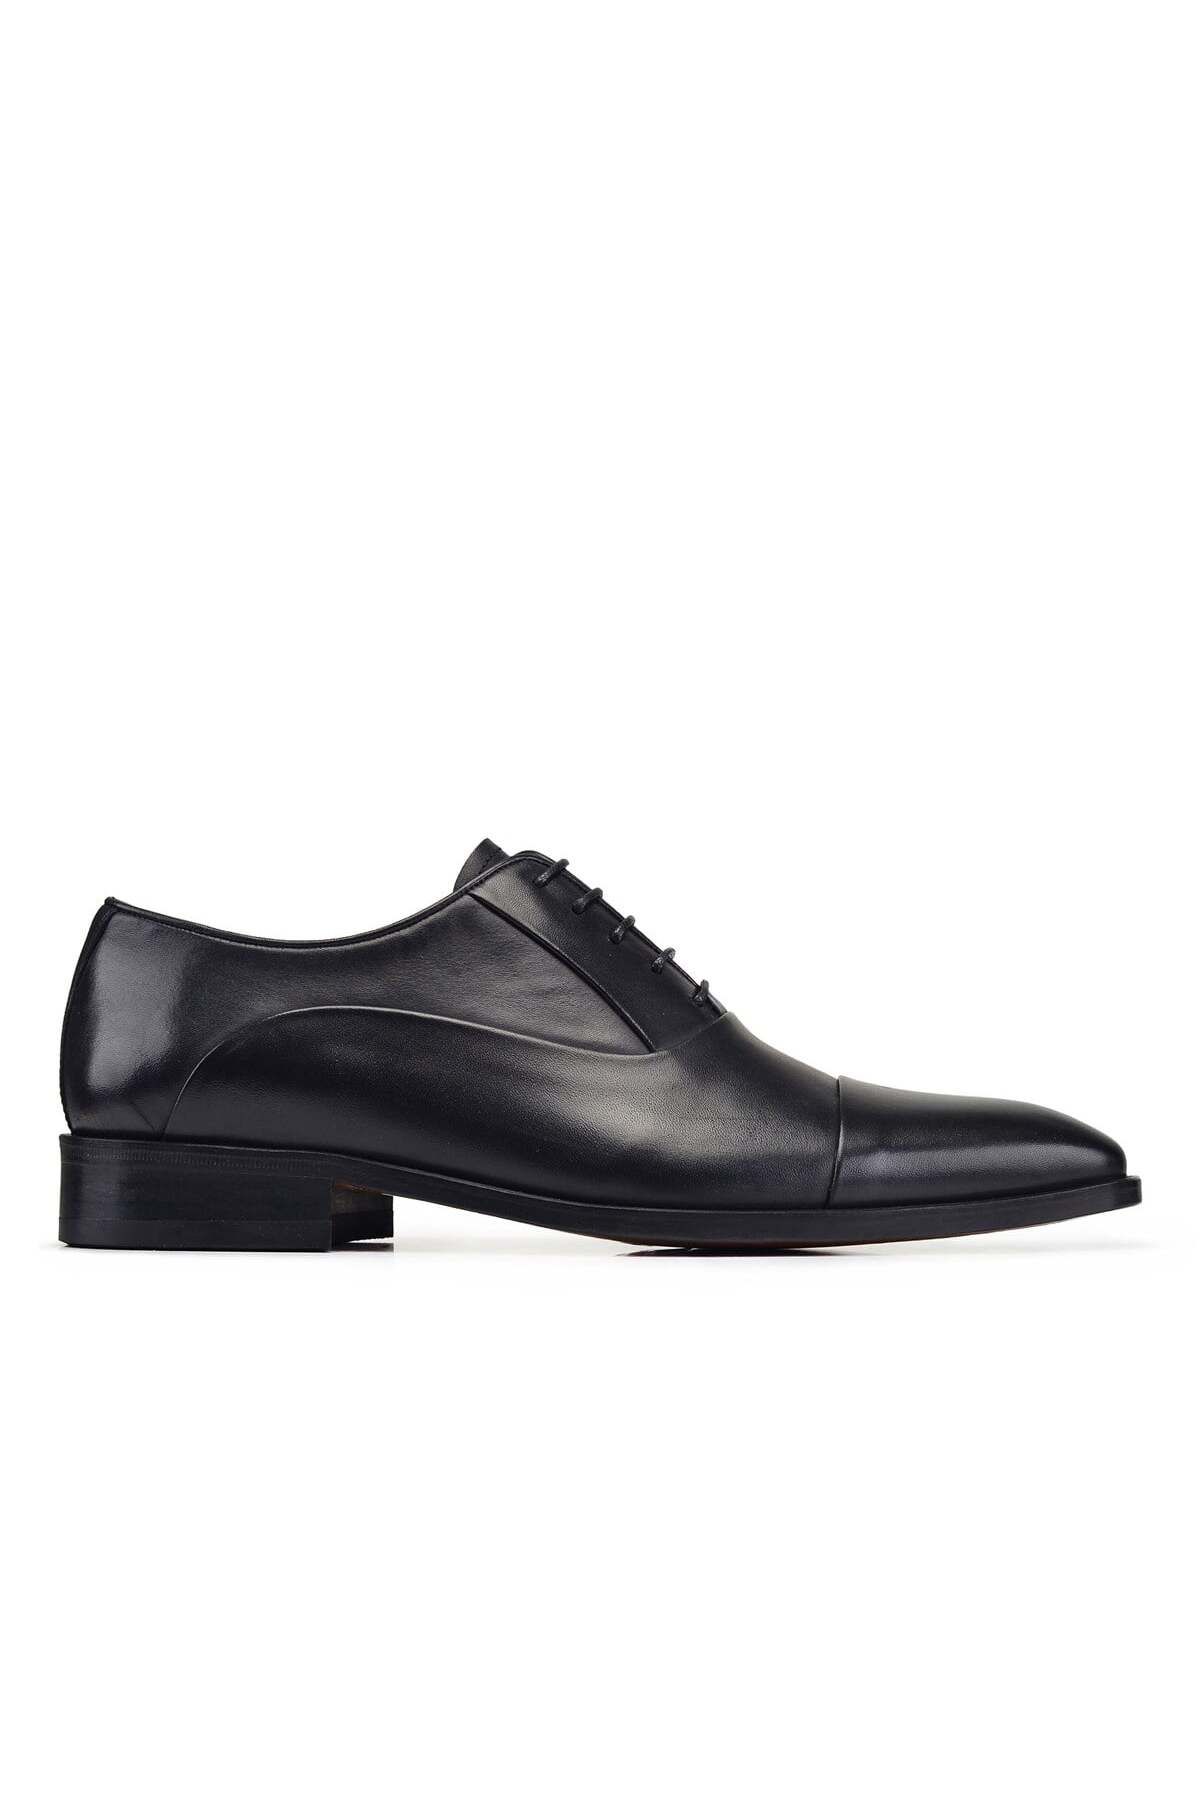 Nevzat Onay Siyah Klasik Bağcıklı Kösele Erkek Ayakkabı -02702-